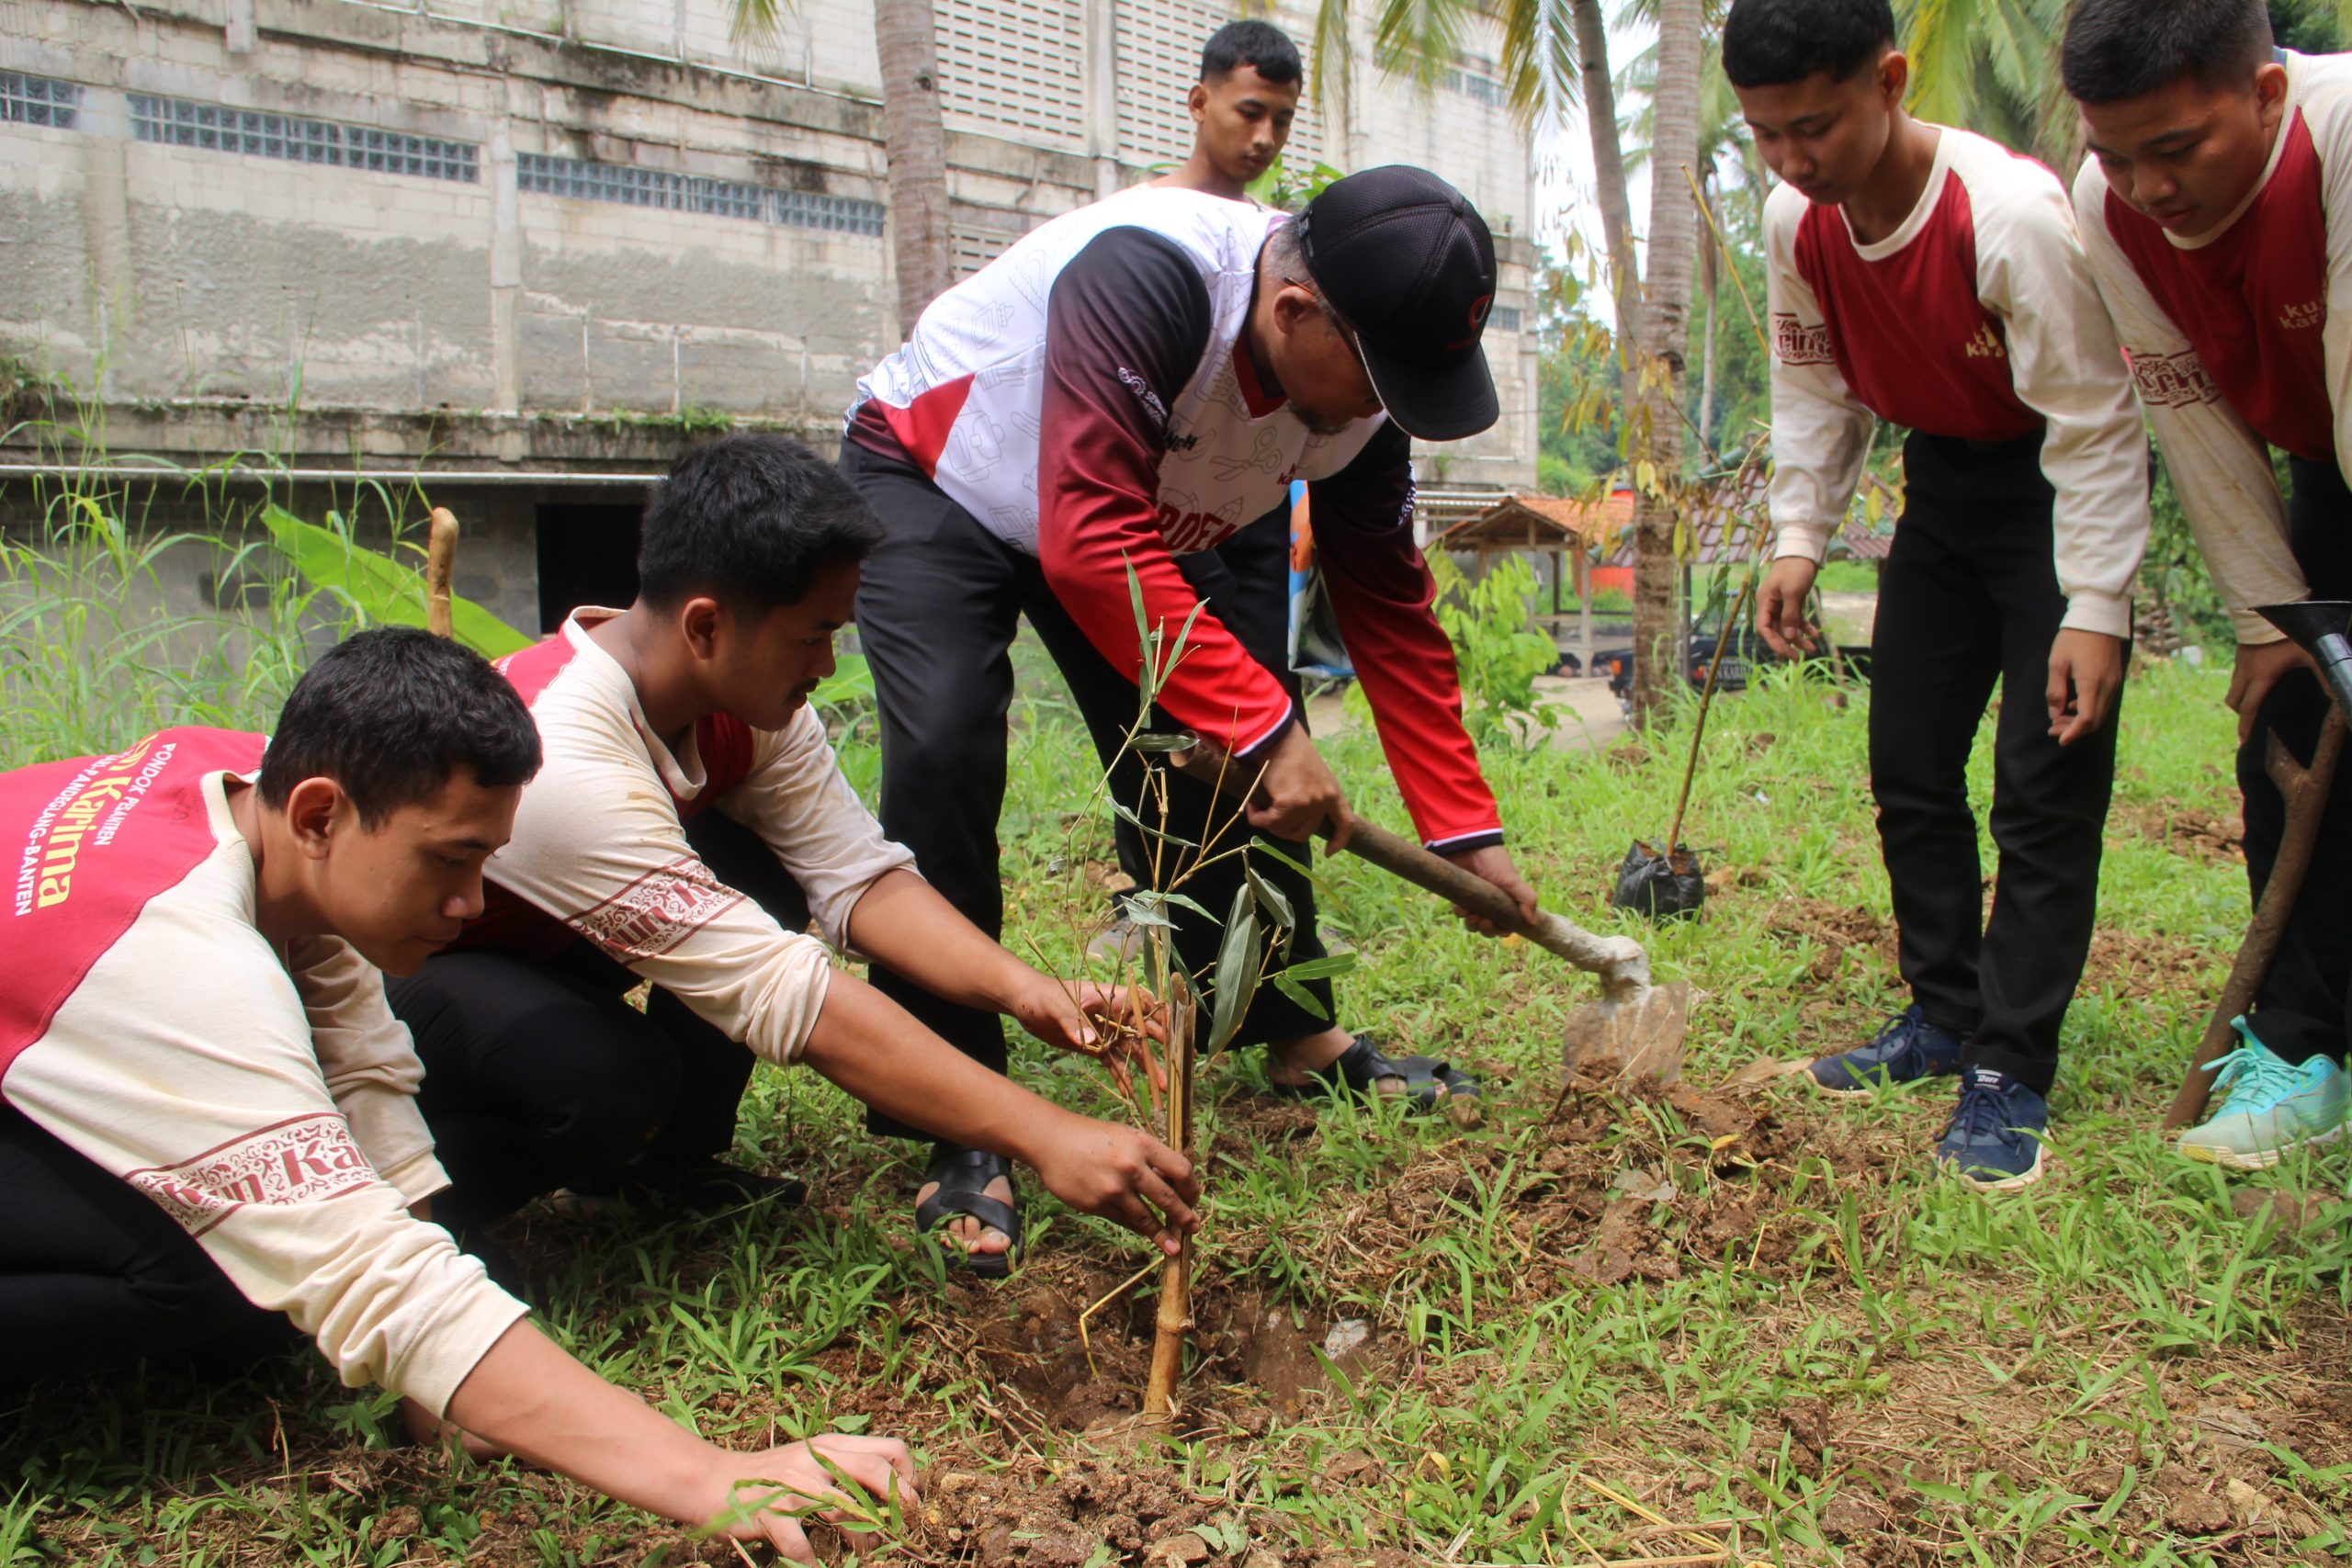 Pimpinan Pondok Pesantren Kun Karima Pandeglang Banten Kiai Soleh bersama santri melakukan penanaman bibit bambu kuning di pinggir sungai pesantren (23/11)